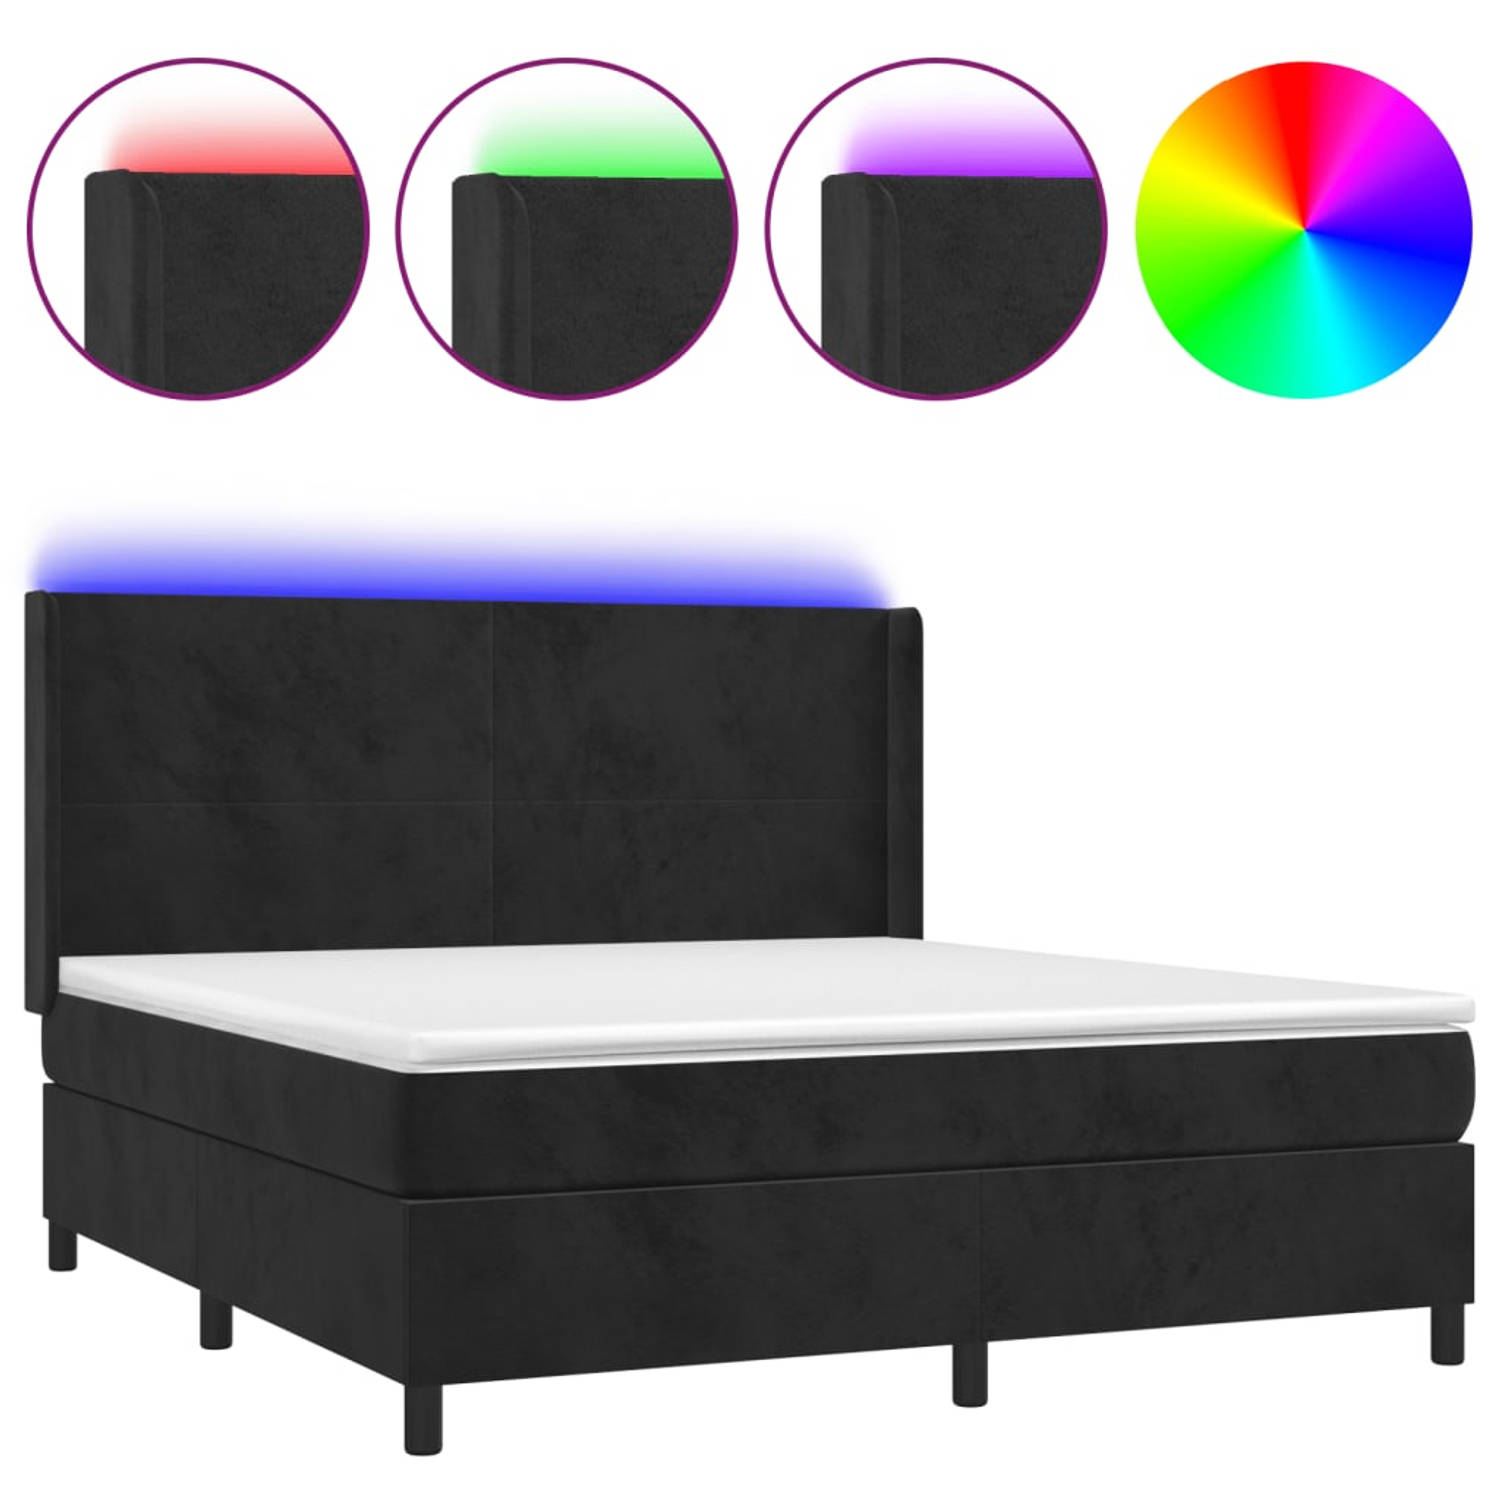 The Living Store Boxspring Bed - Zwart fluweel - 203 x 163 x 118/128 cm - Verstelbaar hoofdbord - Kleurrijke LED-verlichting - Pocketvering matras - Huidvriendelijk topmatras - USB